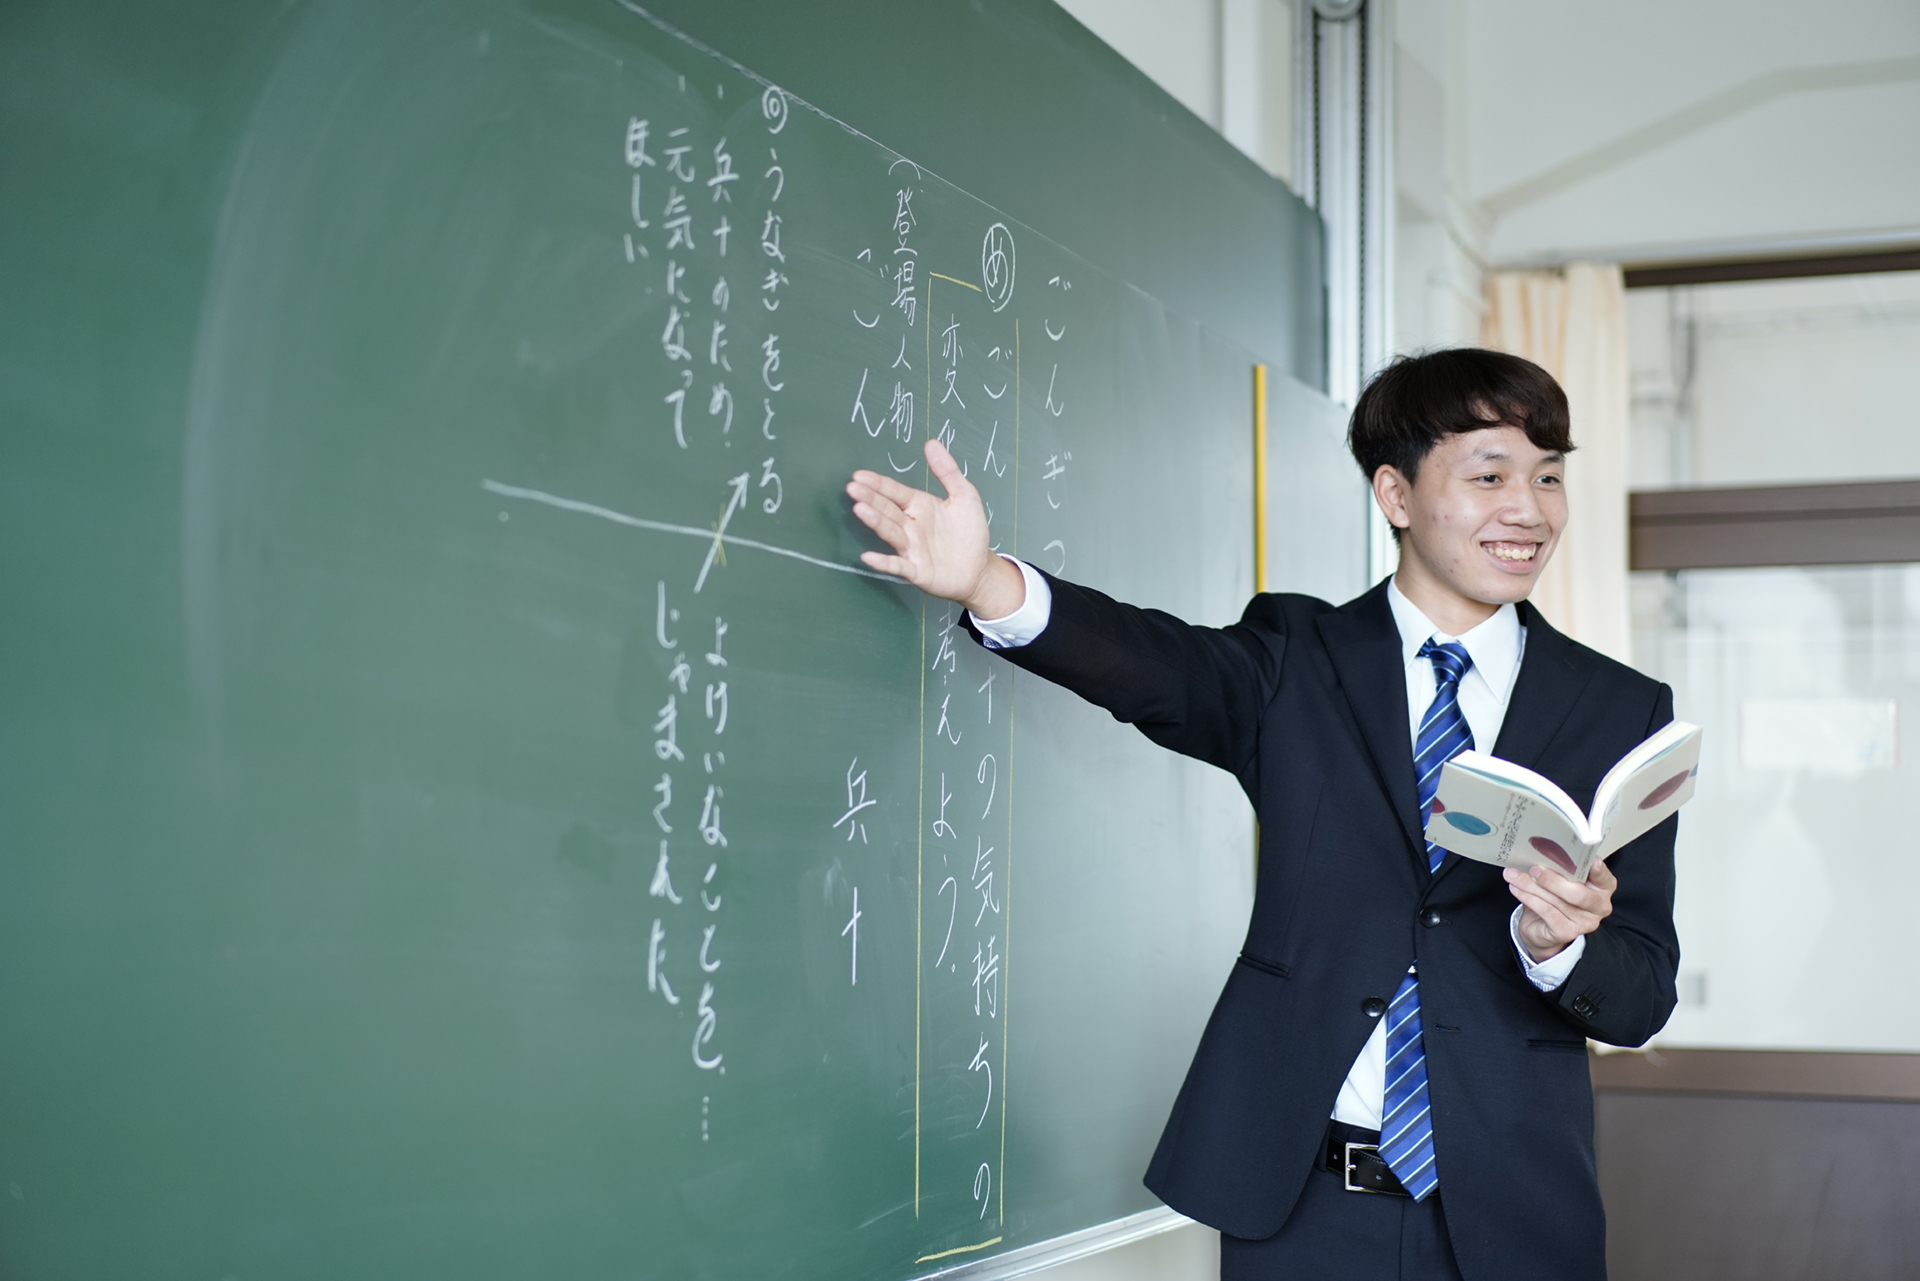 少子化で小学校教諭の需要は少なくなるのか 教員採用試験の状況と教師不足について 横浜高等教育専門学校